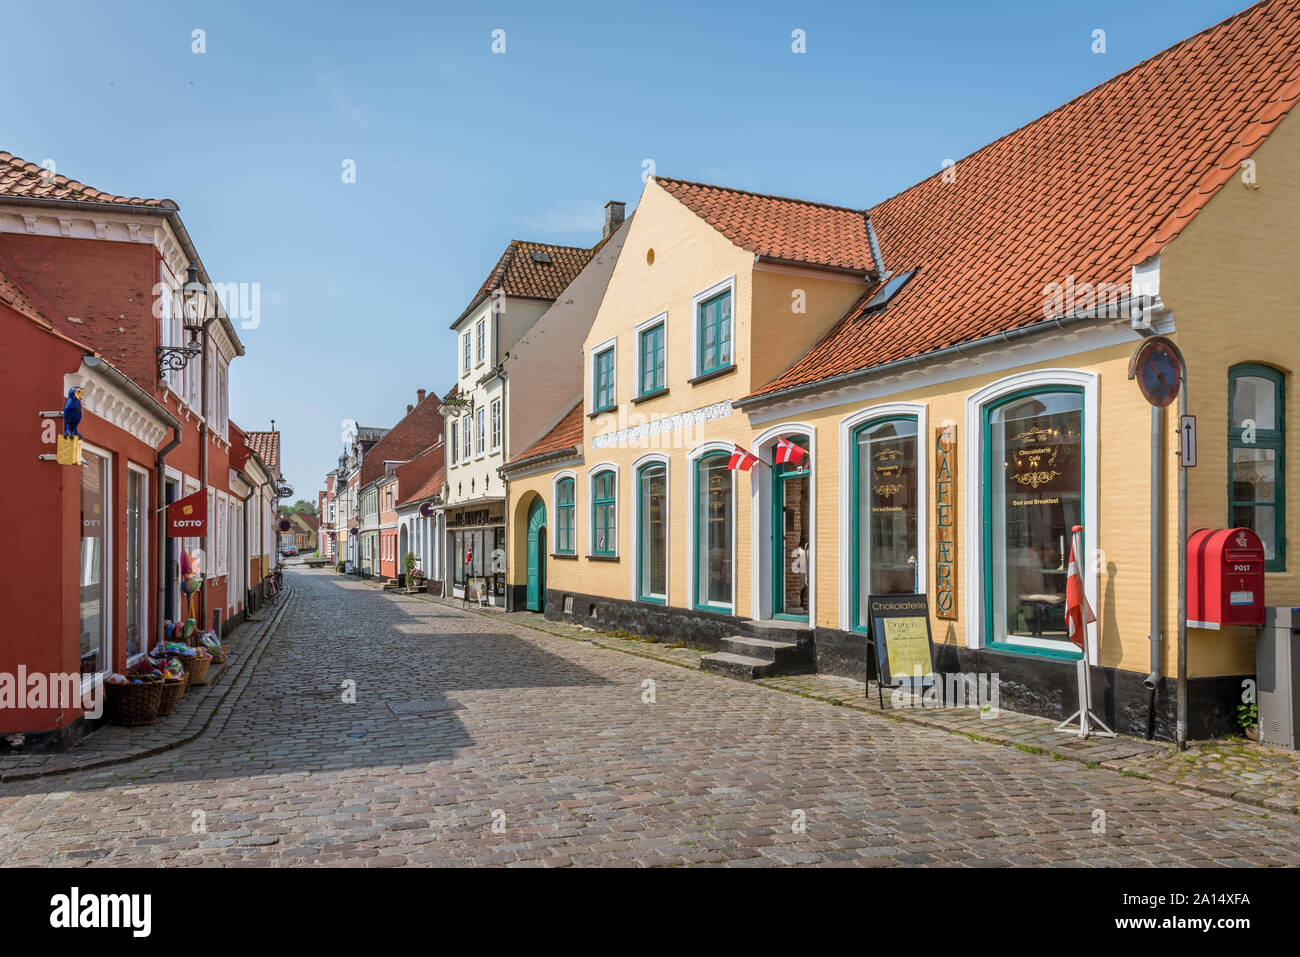 Rue colorés avec de vieilles maisons et de drapeaux danois en Aeroskobing, Danemark, le 13 juillet 2019 Banque D'Images